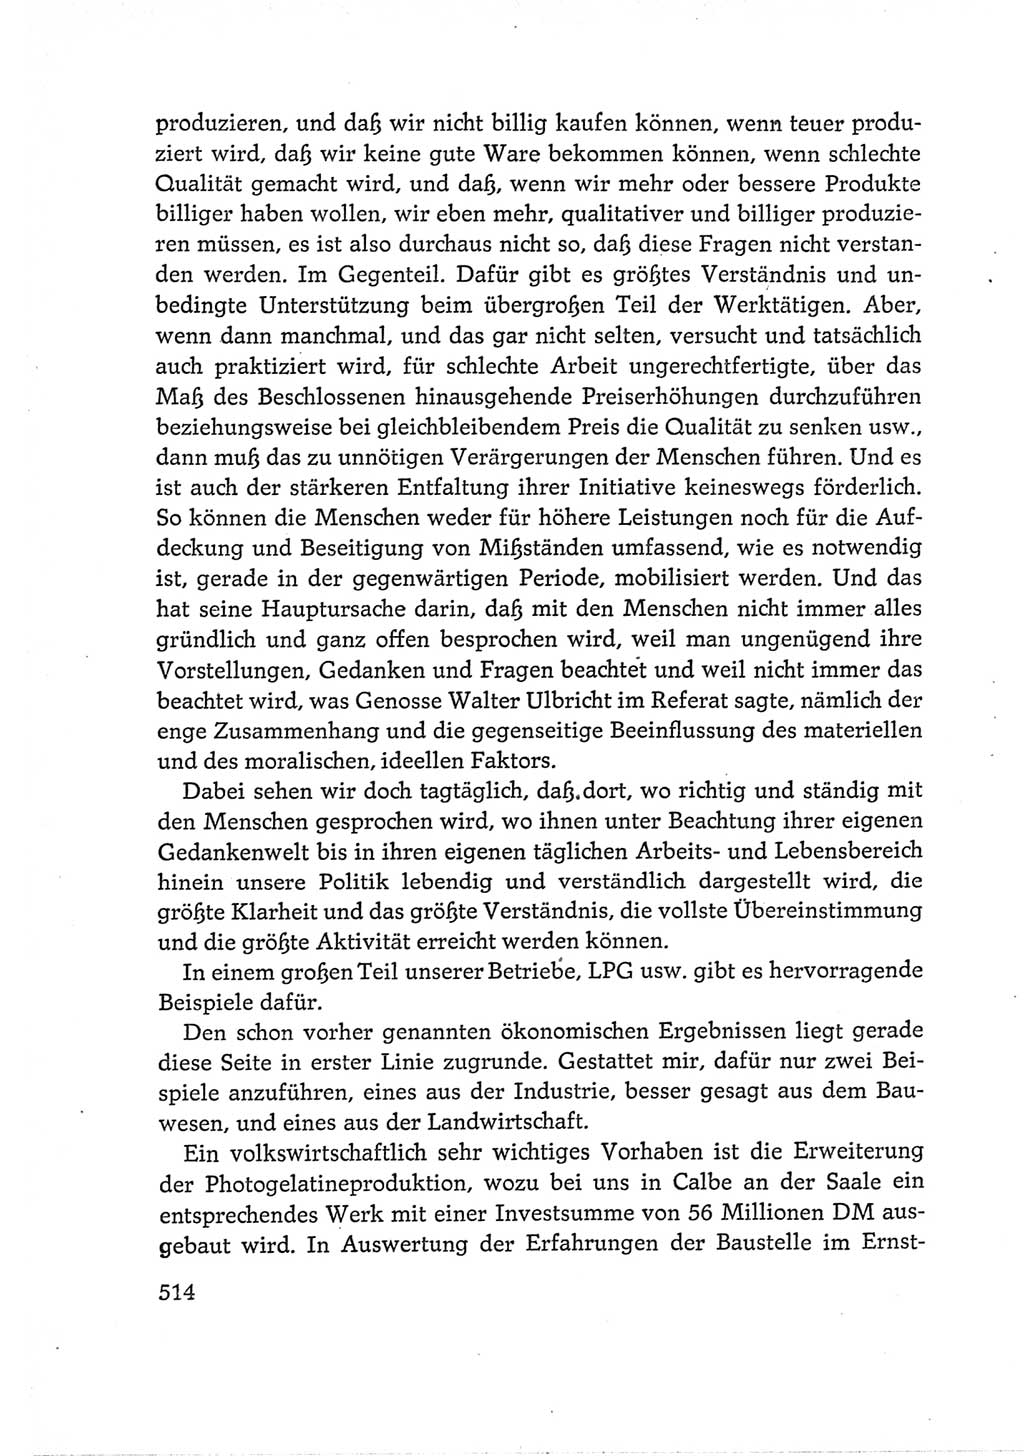 Protokoll der Verhandlungen des Ⅵ. Parteitages der Sozialistischen Einheitspartei Deutschlands (SED) [Deutsche Demokratische Republik (DDR)] 1963, Band Ⅰ, Seite 514 (Prot. Verh. Ⅵ. PT SED DDR 1963, Bd. Ⅰ, S. 514)